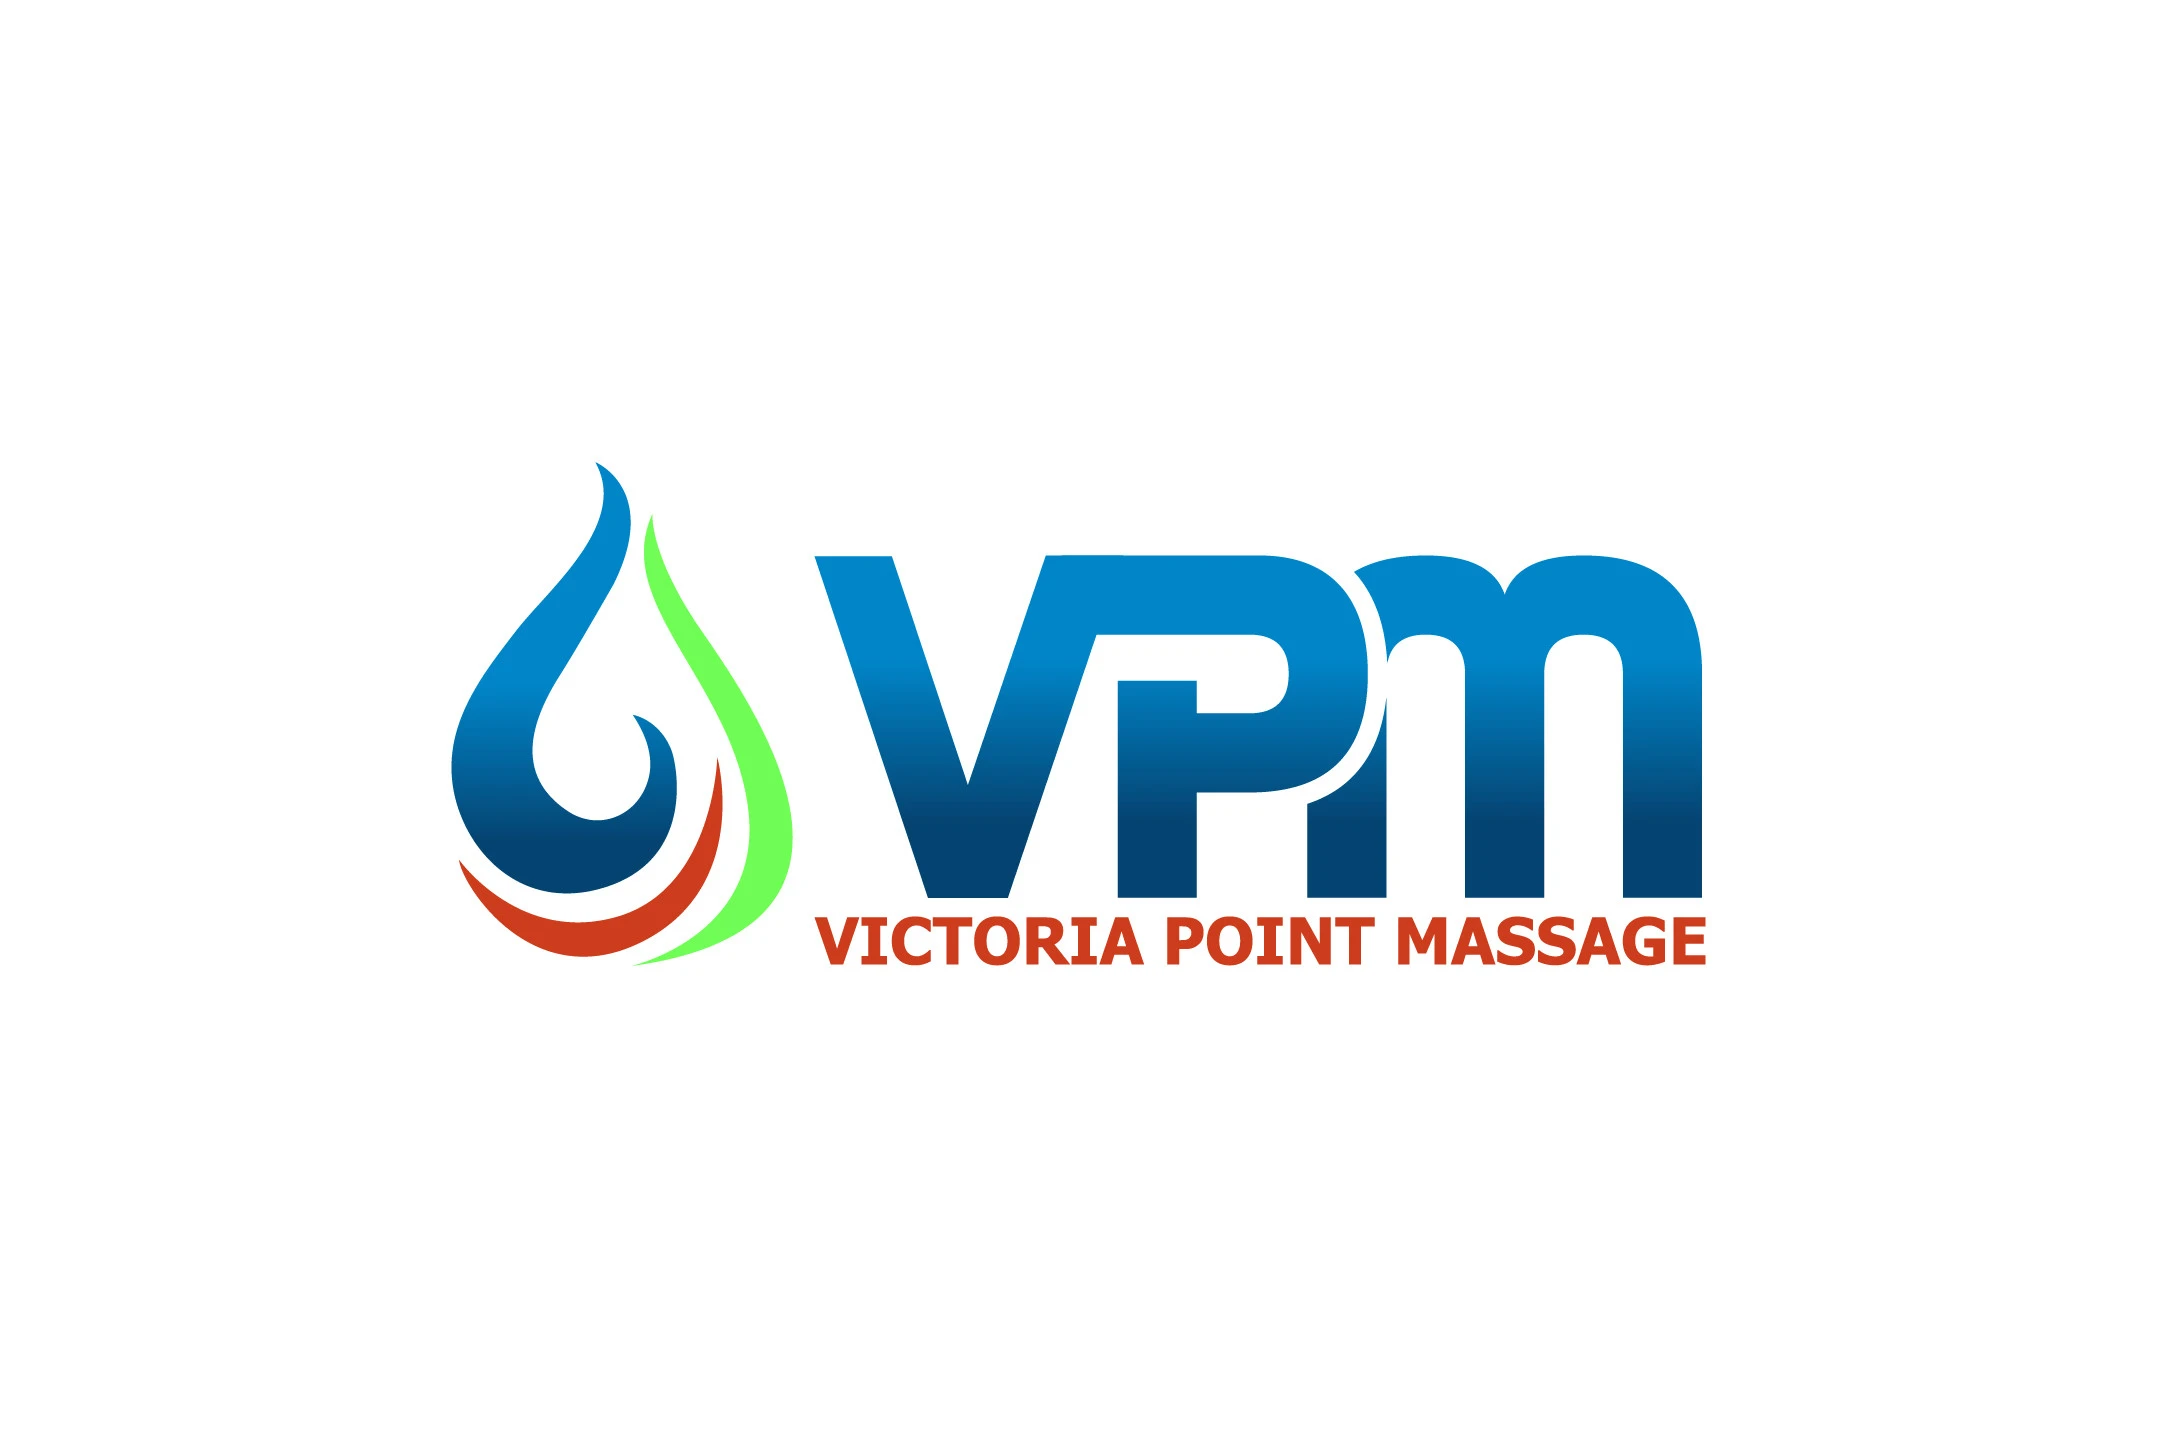 Victoria Point Massage Victoria Point